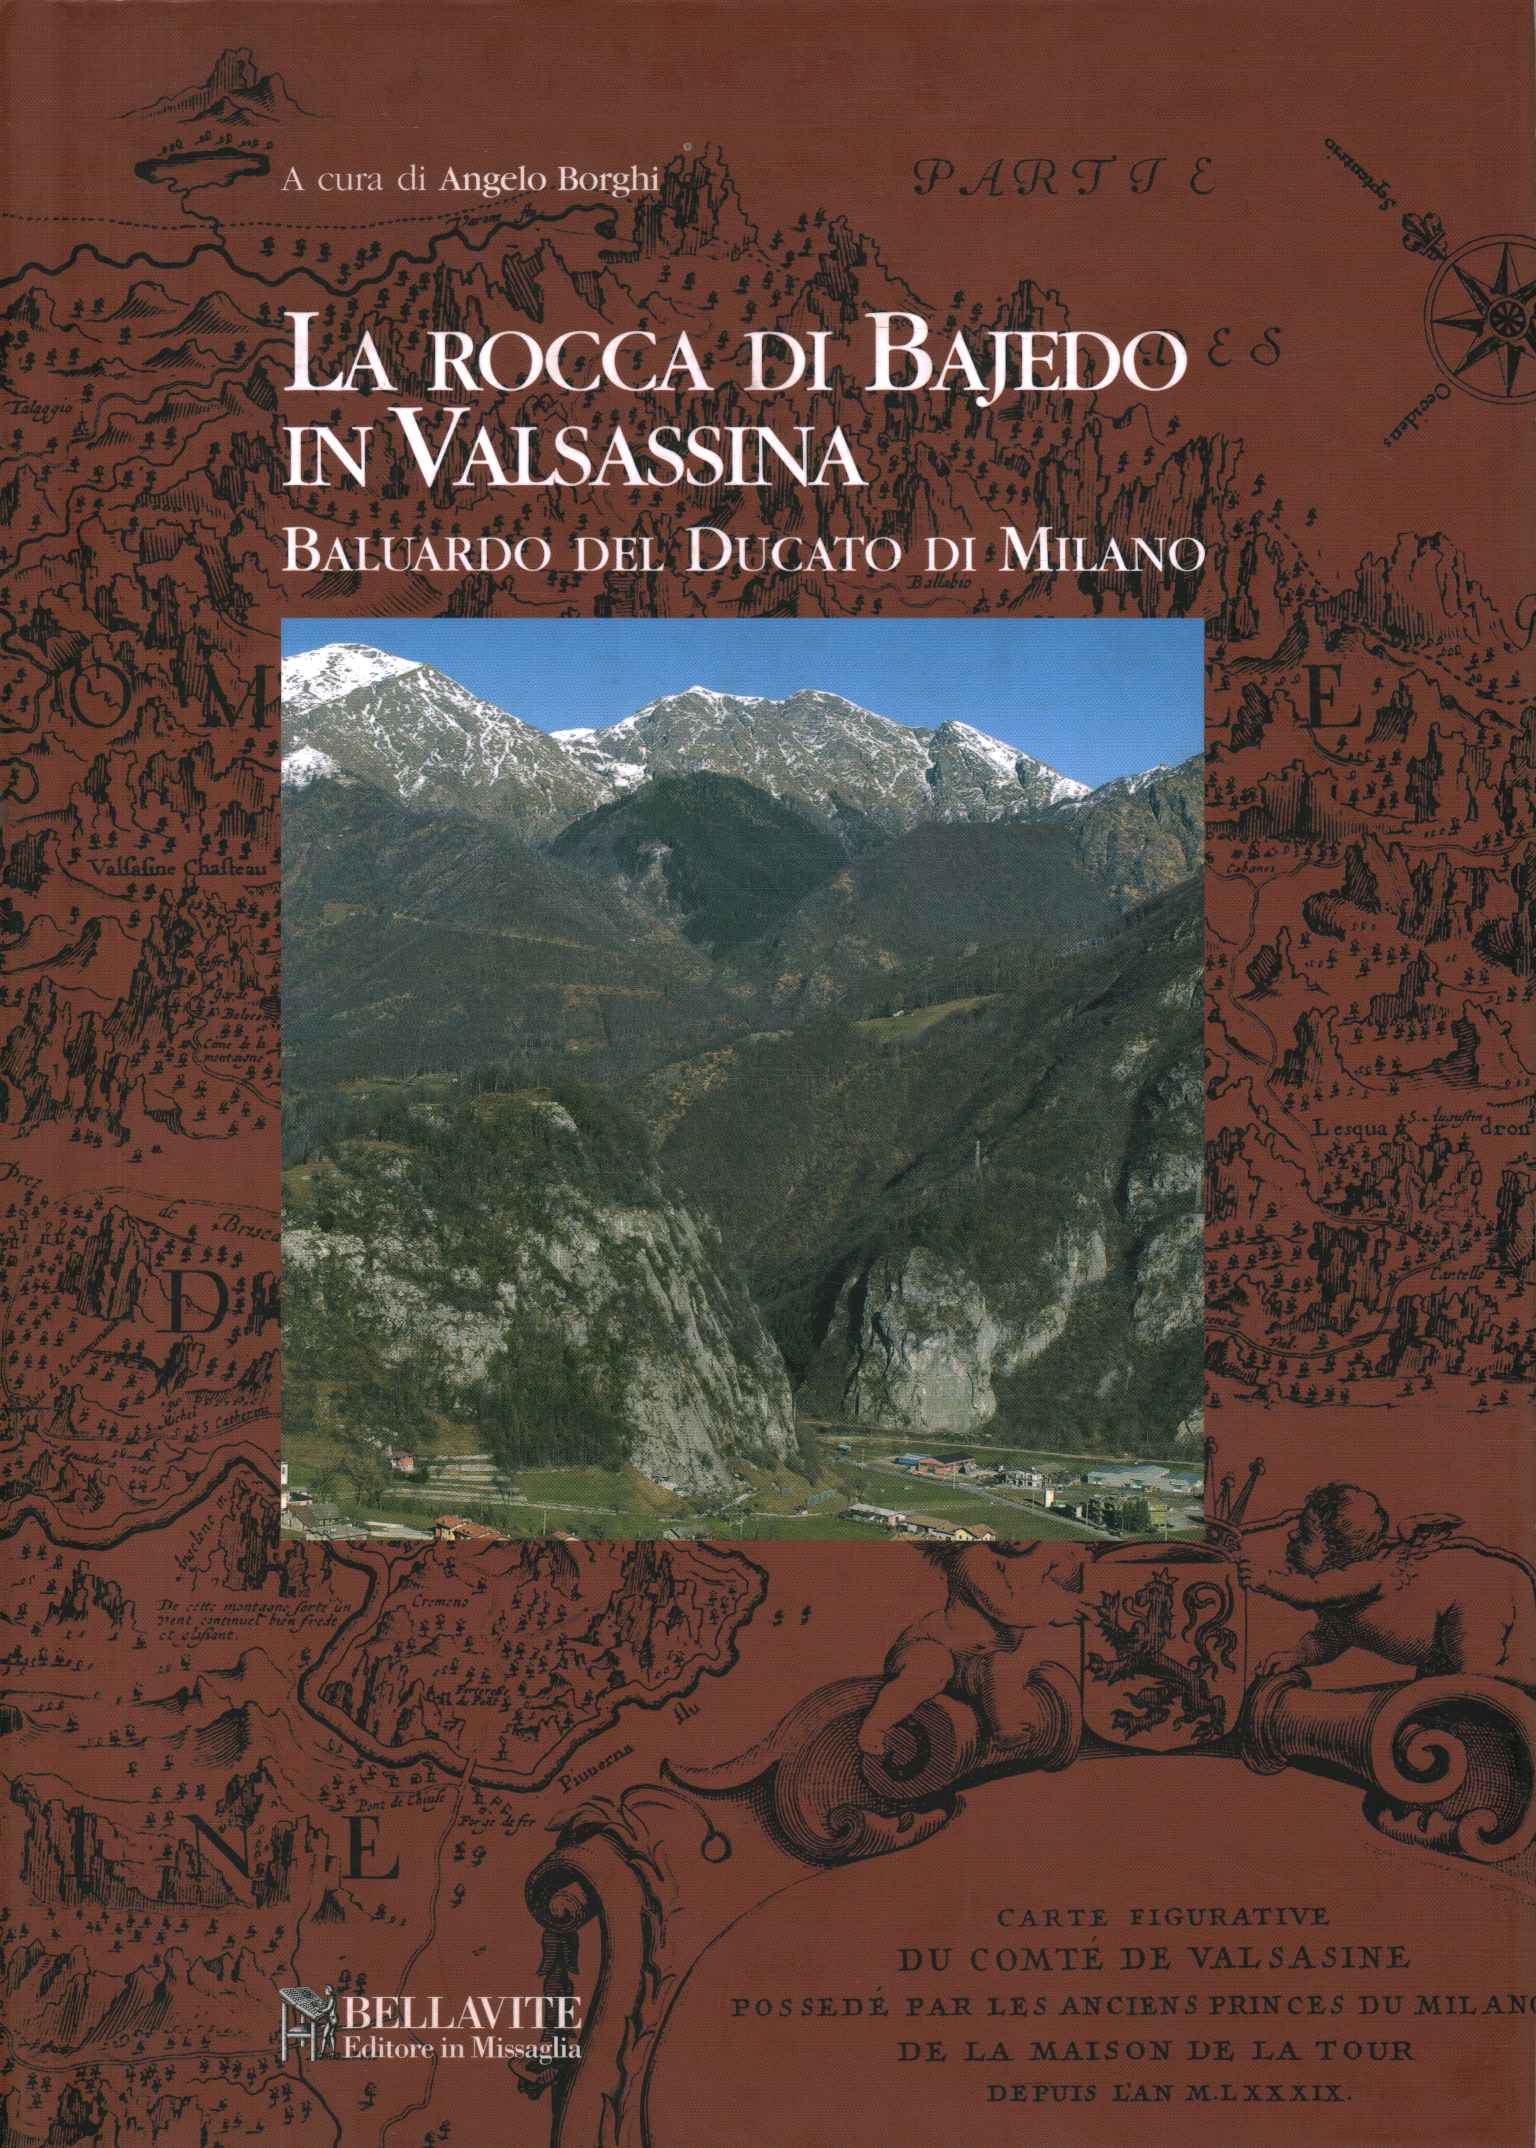 The Rocca di Bajedo in Valsassina